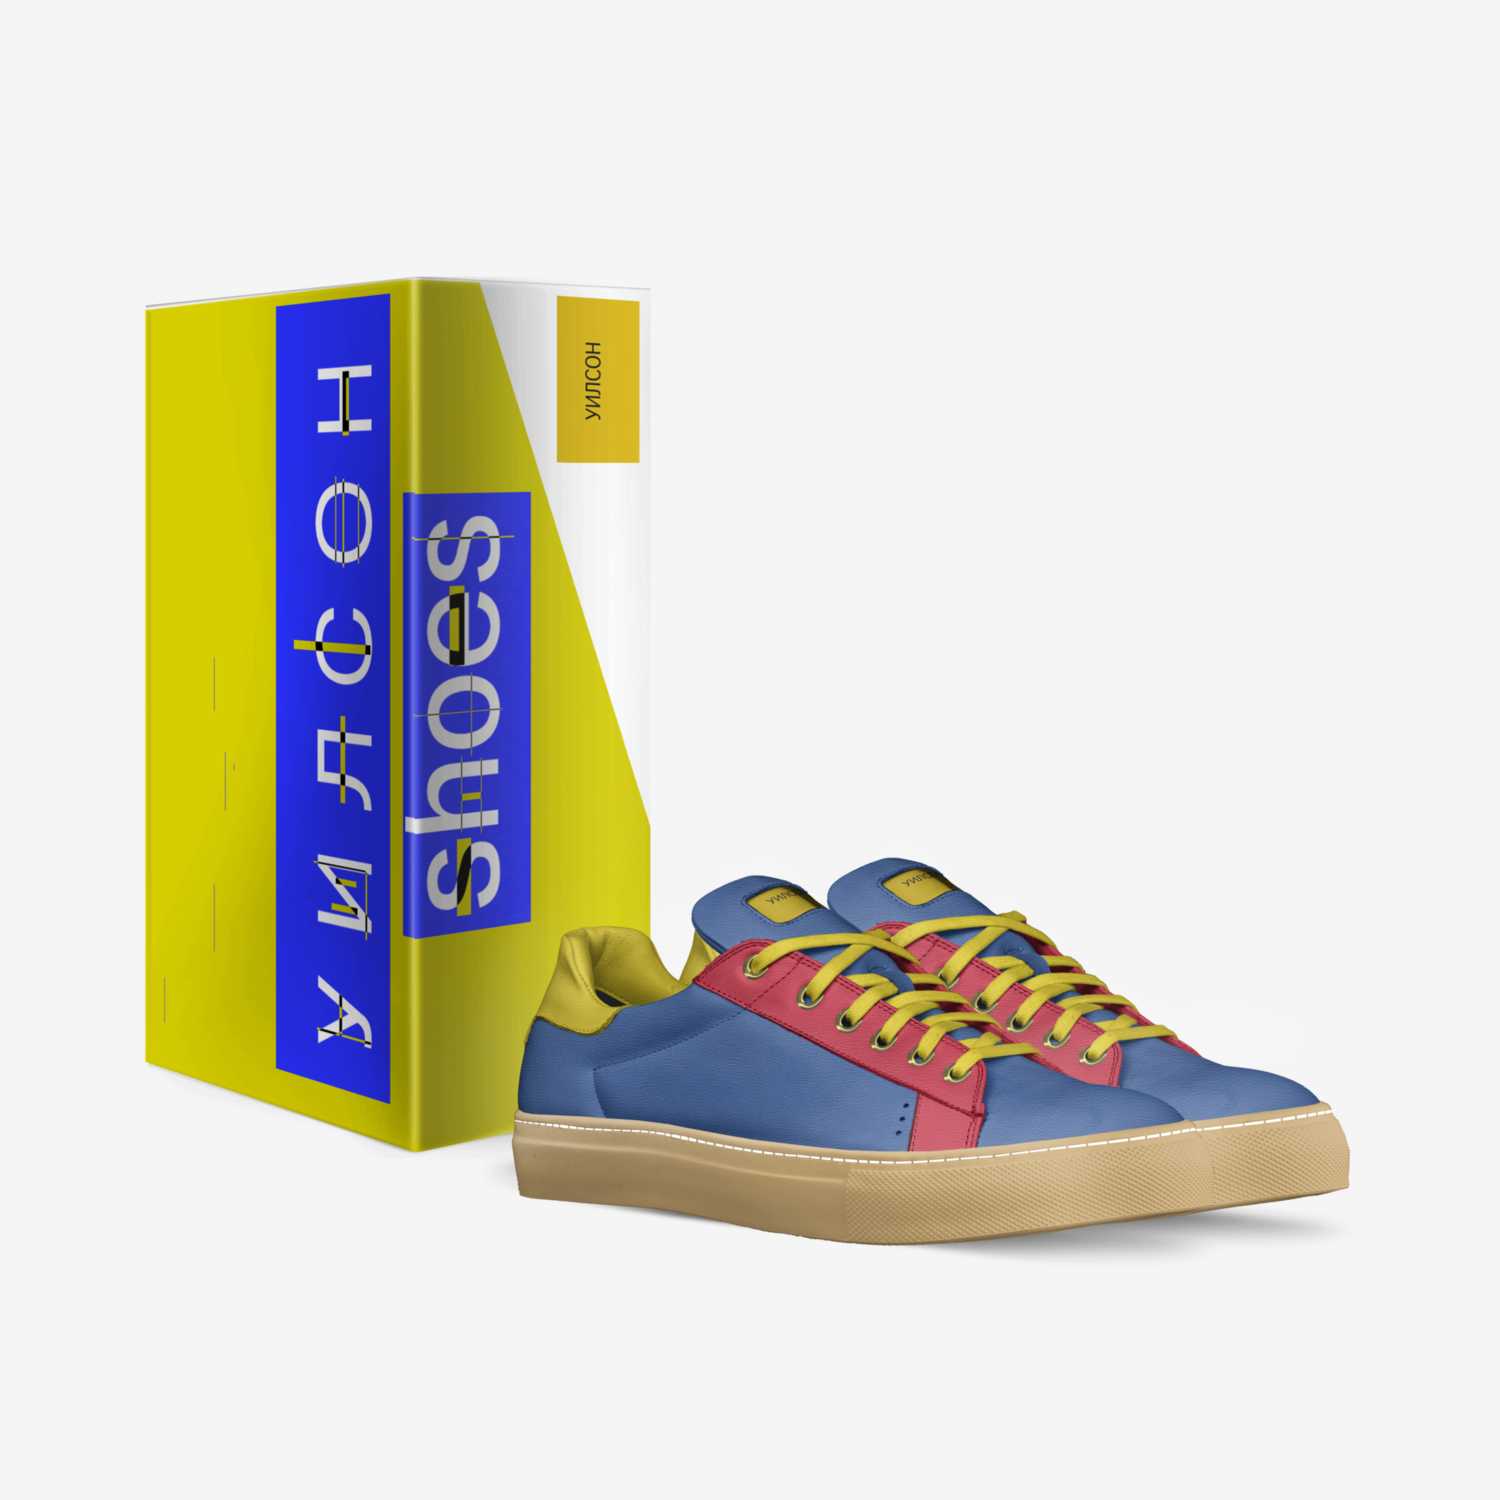 УИЛСОН custom made in Italy shoes by Josh Wilson | Box view